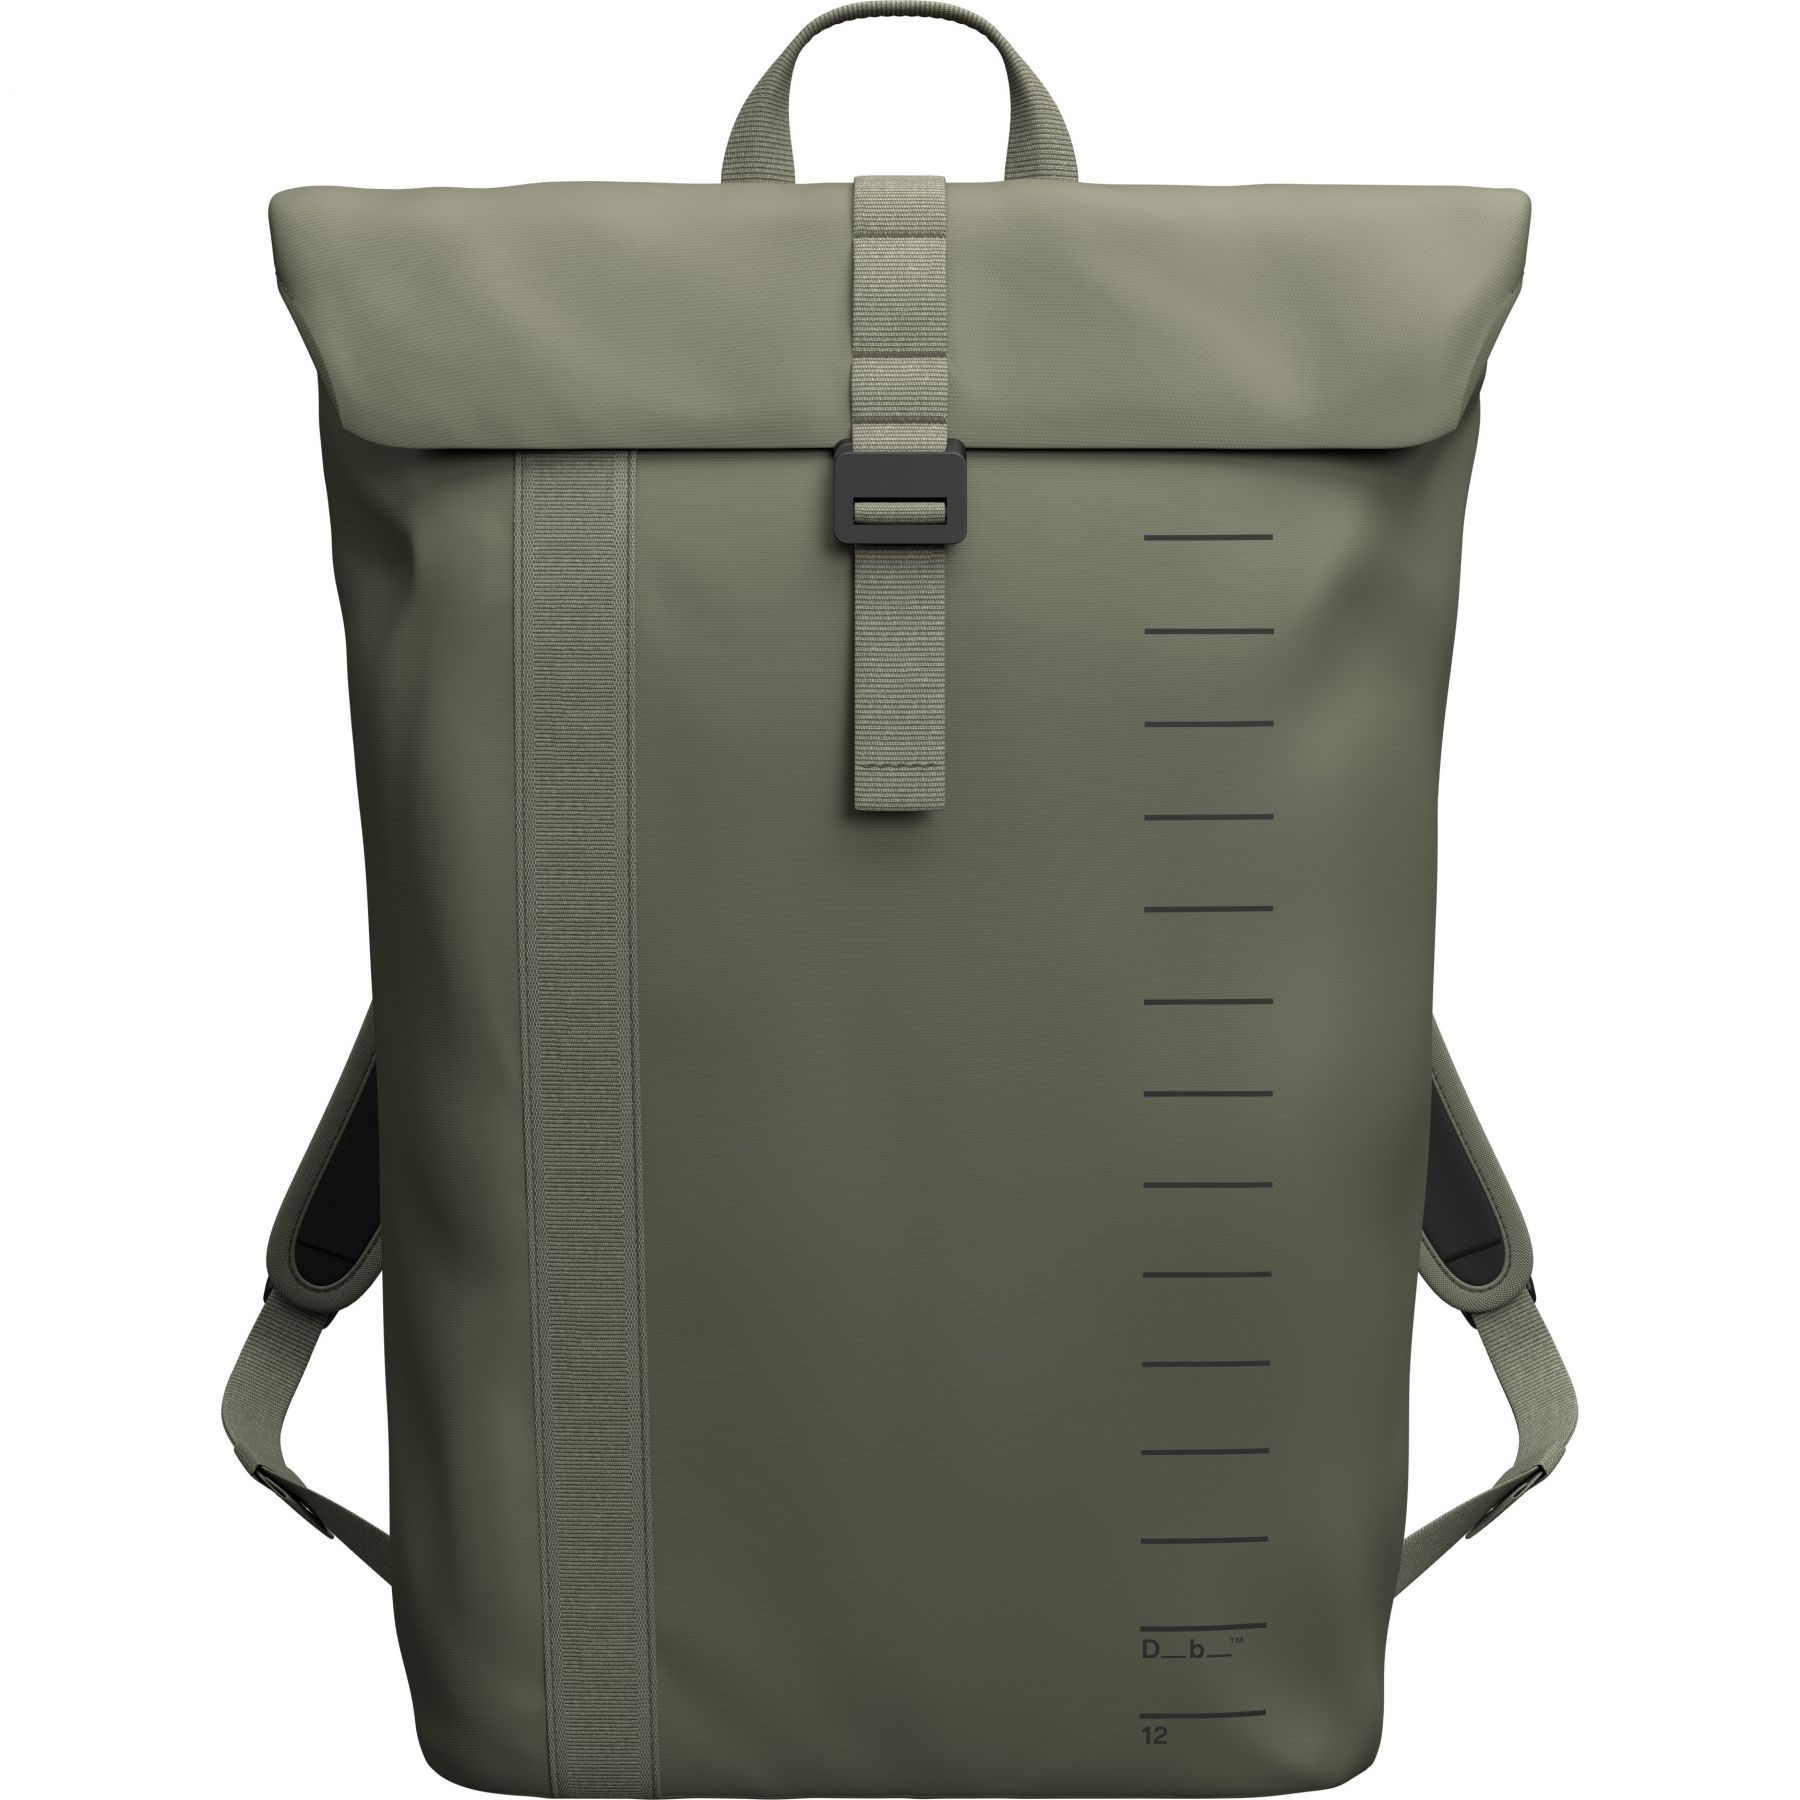 Se Db Essential Backpack, 12L, moss green hos AktivVinter.dk